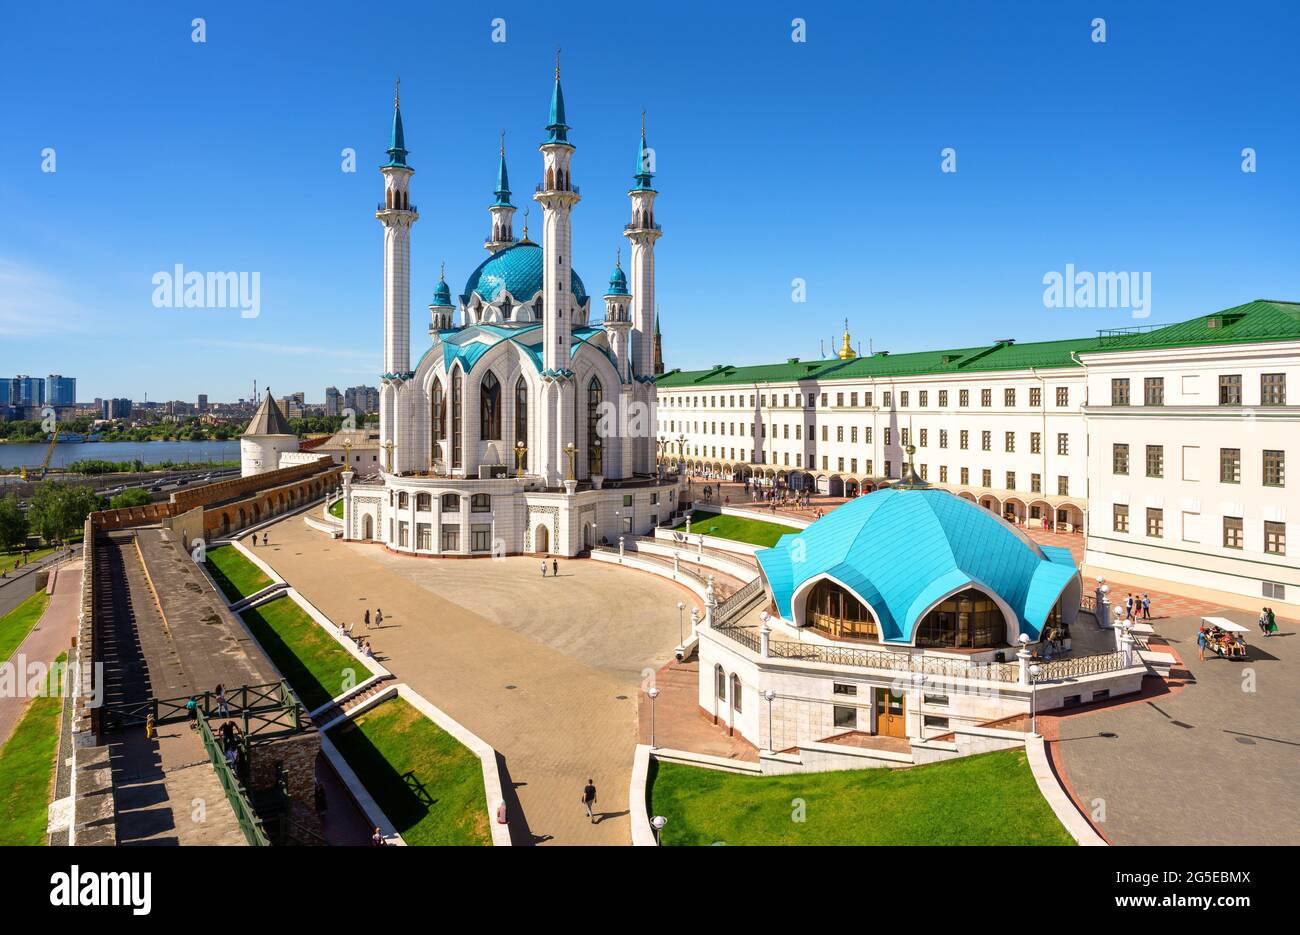 Le Kremlin de Kazan en été, Tatarstan, Russie. Vue aérienne de la mosquée de Kul Sharif, point de repère de Kazan. Panorama d'attraction touristique, architecture islamique Banque D'Images